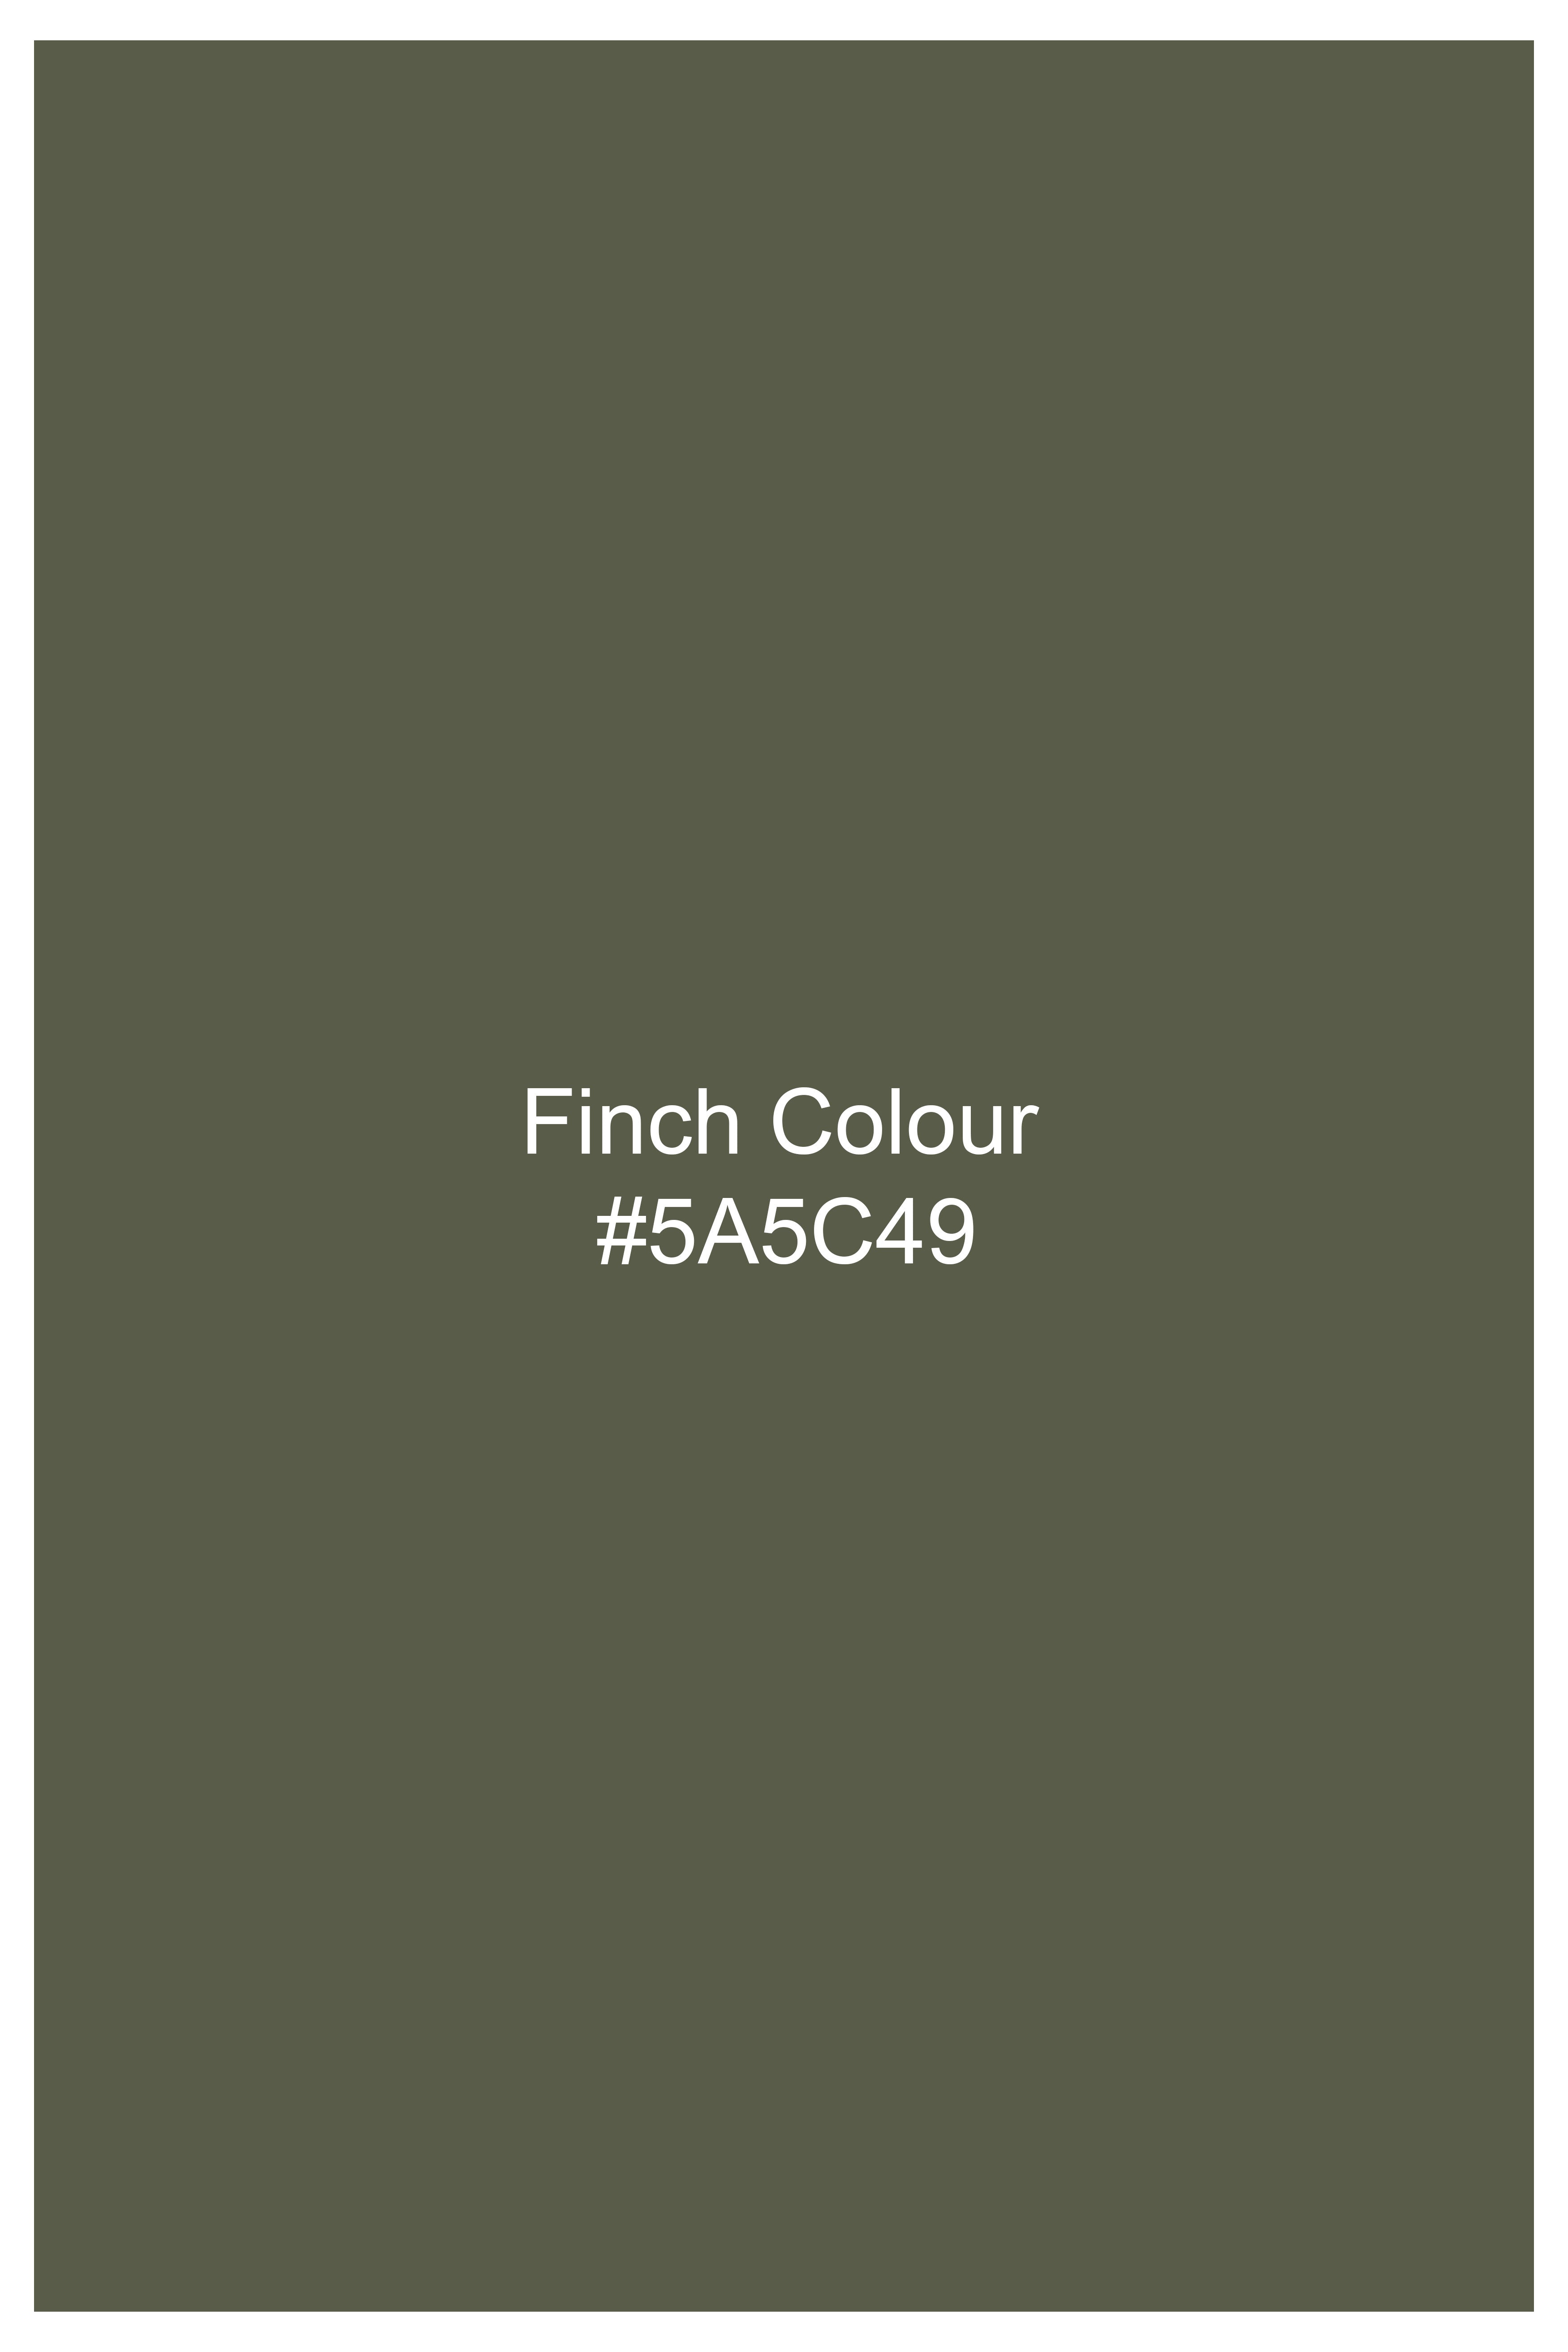 Finch Green Hand Painted Herringbone Designer Shirt 6467-BD-BLK-FP-ART-38, 6467-BD-BLK-FP-ART-H-38, 6467-BD-BLK-FP-ART-39, 6467-BD-BLK-FP-ART-H-39, 6467-BD-BLK-FP-ART-40, 6467-BD-BLK-FP-ART-H-40, 6467-BD-BLK-FP-ART-42, 6467-BD-BLK-FP-ART-H-42, 6467-BD-BLK-FP-ART-44, 6467-BD-BLK-FP-ART-H-44, 6467-BD-BLK-FP-ART-46, 6467-BD-BLK-FP-ART-H-46, 6467-BD-BLK-FP-ART-48, 6467-BD-BLK-FP-ART-H-48, 6467-BD-BLK-FP-ART-50, 6467-BD-BLK-FP-ART-H-50, 6467-BD-BLK-FP-ART-52, 6467-BD-BLK-FP-ART-H-52